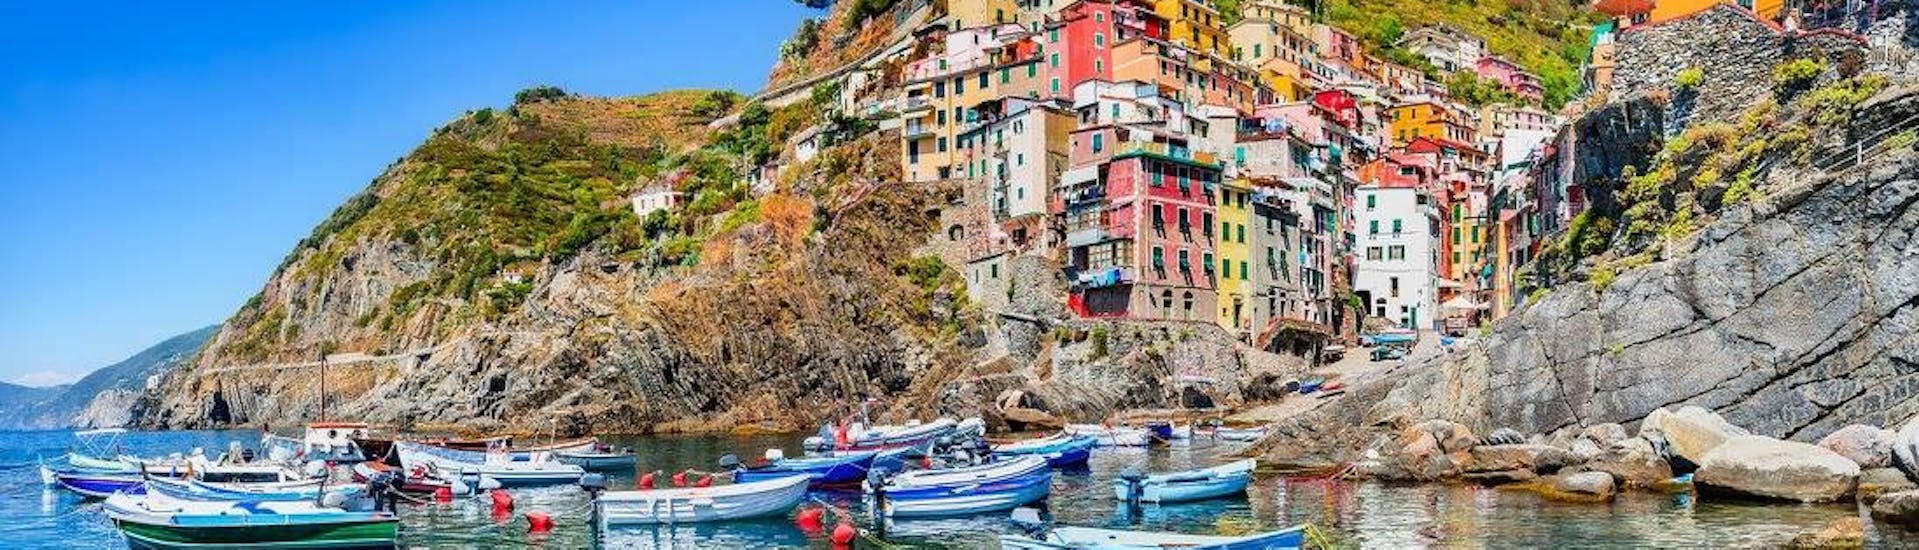 Die tolle Aussicht, die man während der Bootstour nach Cinque Terre mit Costa di Faraggiana Levanto bewundern kann.